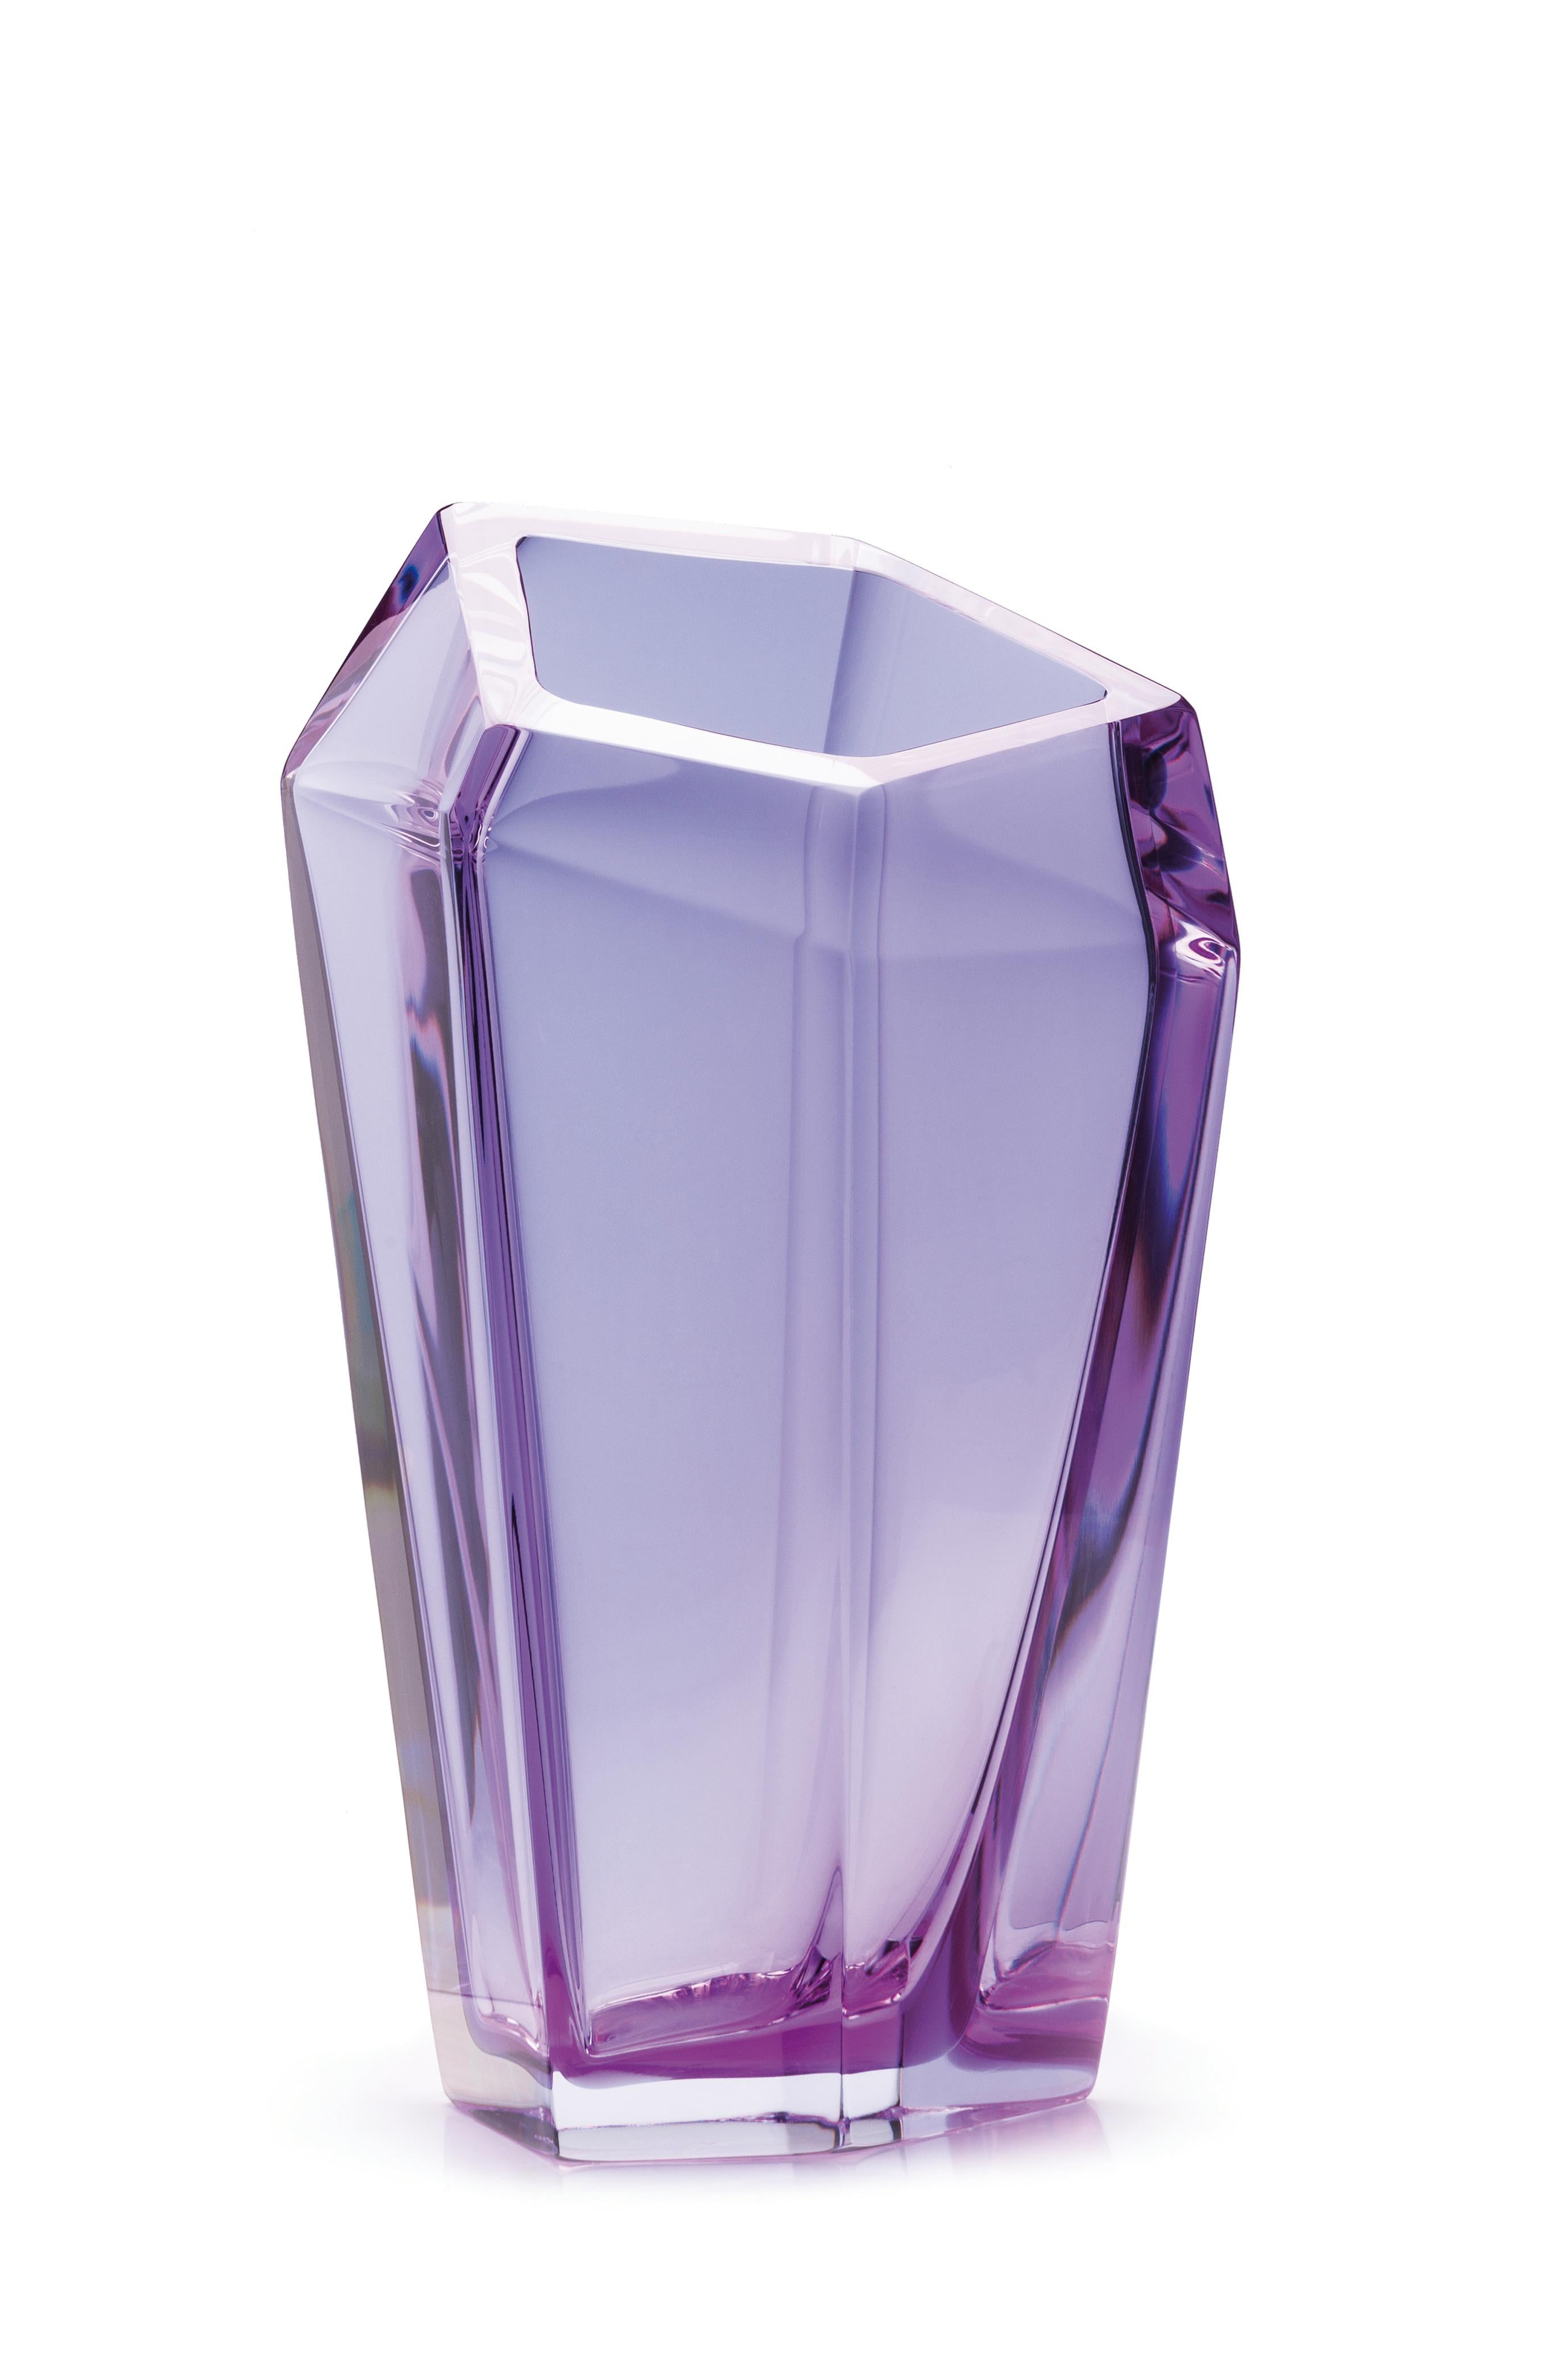 Grand vase Kastle Violet de Purho
Dimensions : D20 x H47cm
Matériaux : Verre
D'autres couleurs et dimensions sont disponibles.

Purho est un nouveau protagoniste du design made in Italy, un travail de synthèse, une recherche qui dure depuis des